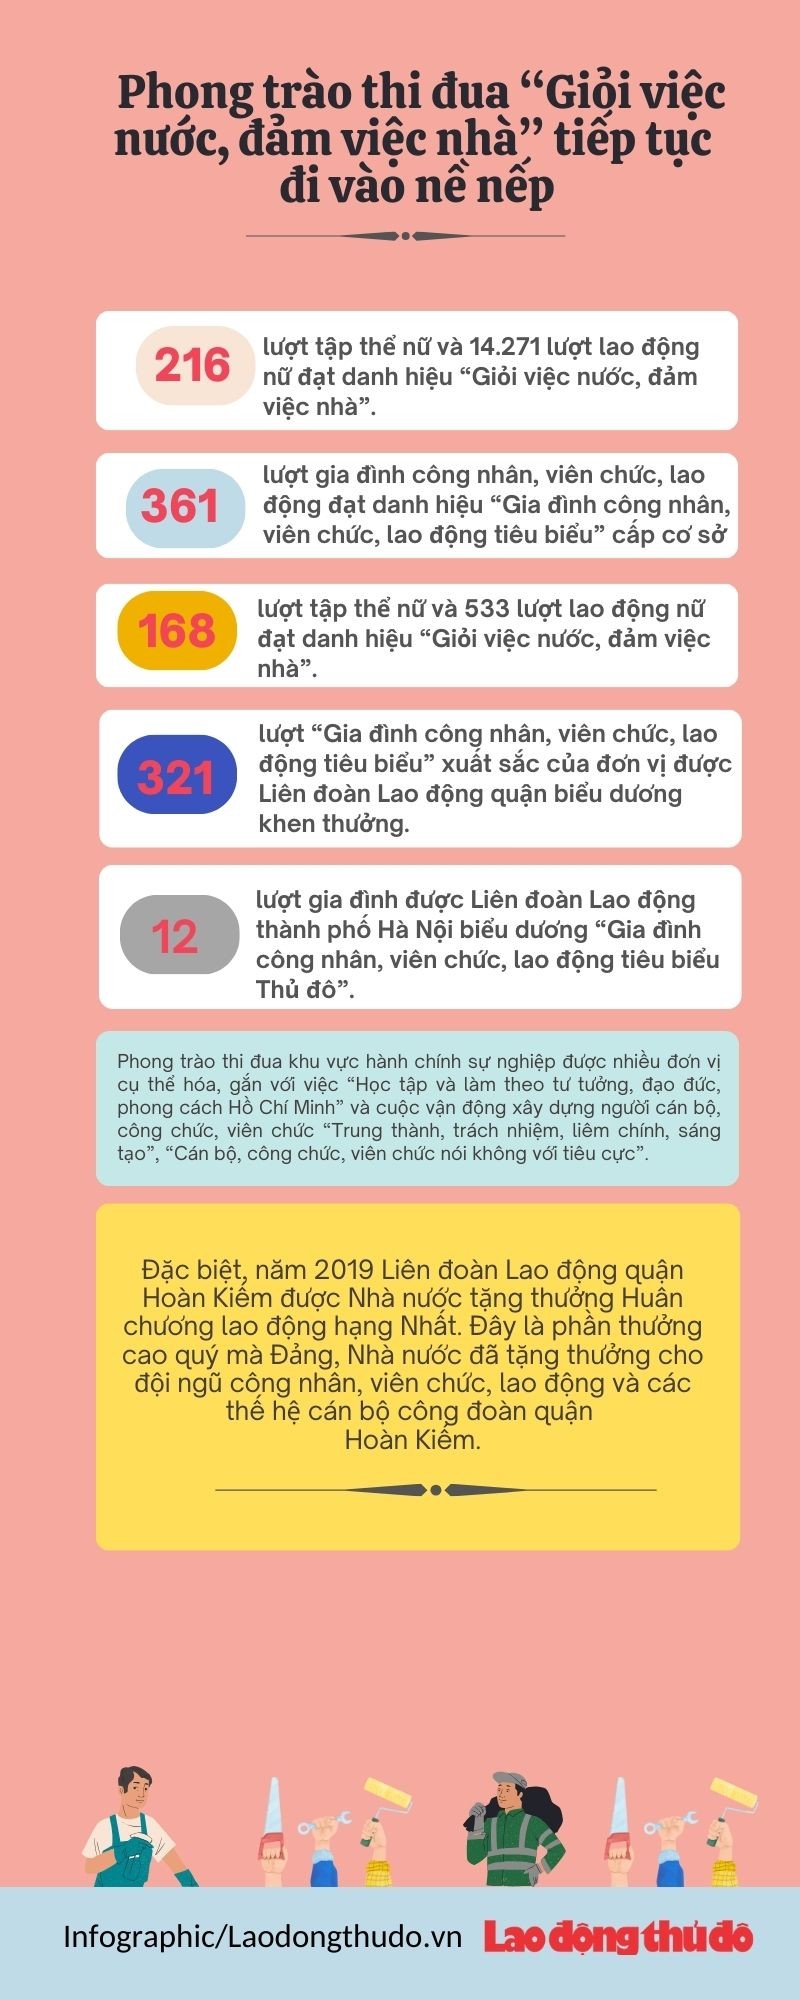 Infographic: Thiết thực phong trào thi đua yêu nước trong đoàn viên, người lao động quận Hoàn Kiếm